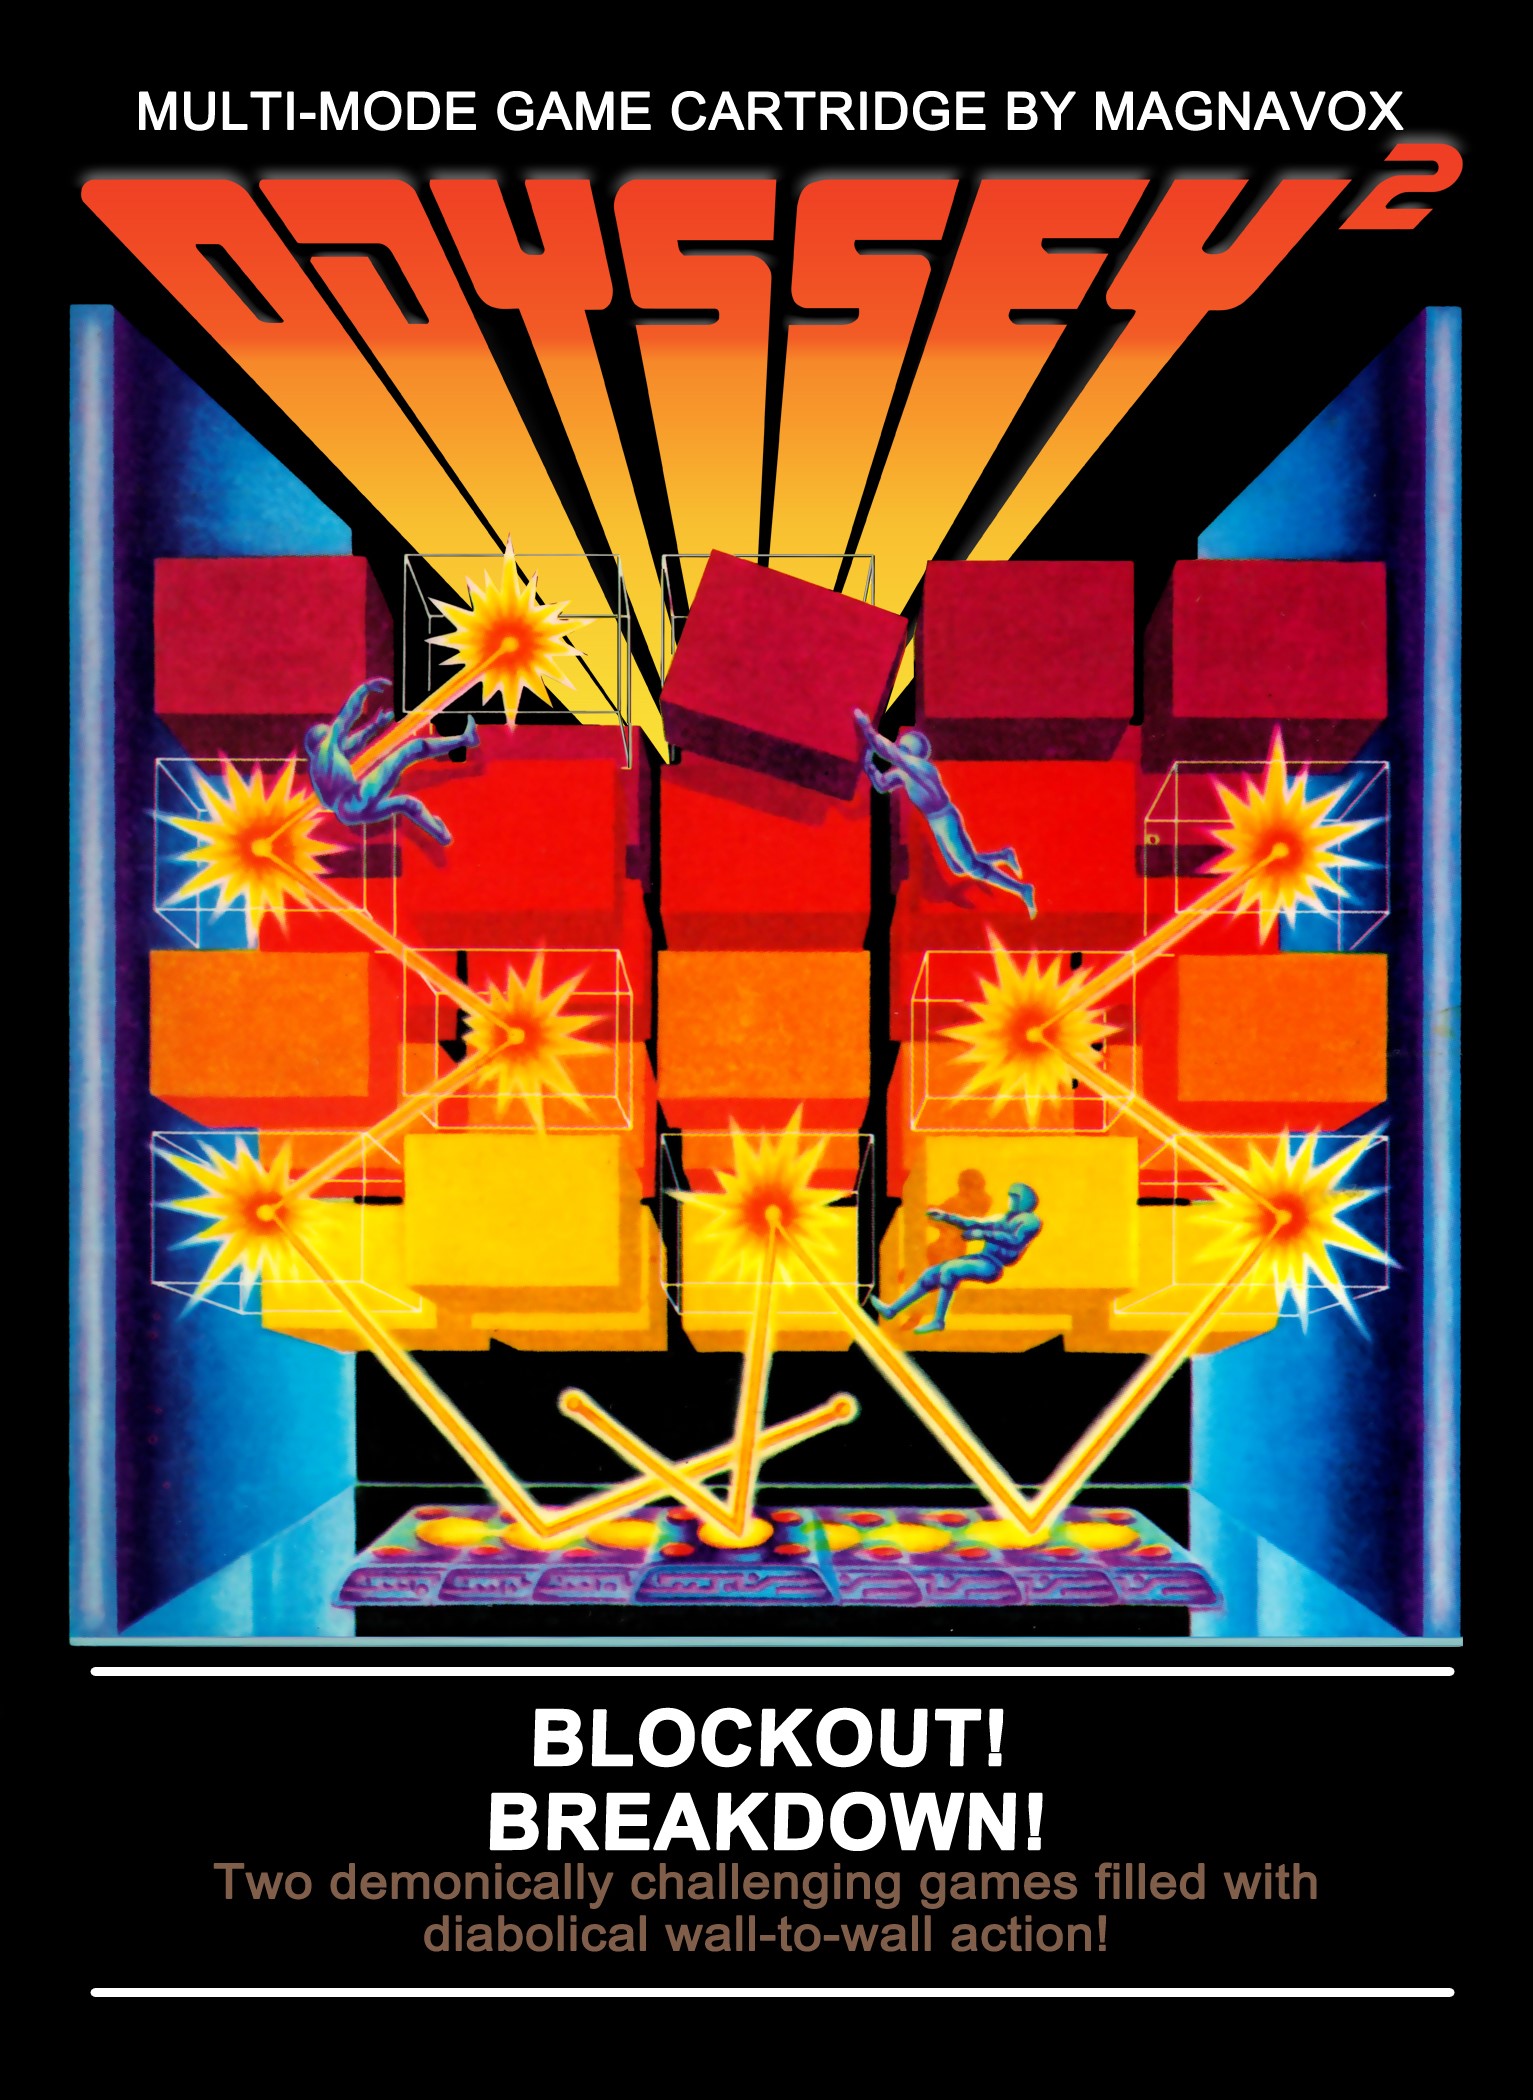 'Blockout' / 'Breakdown'